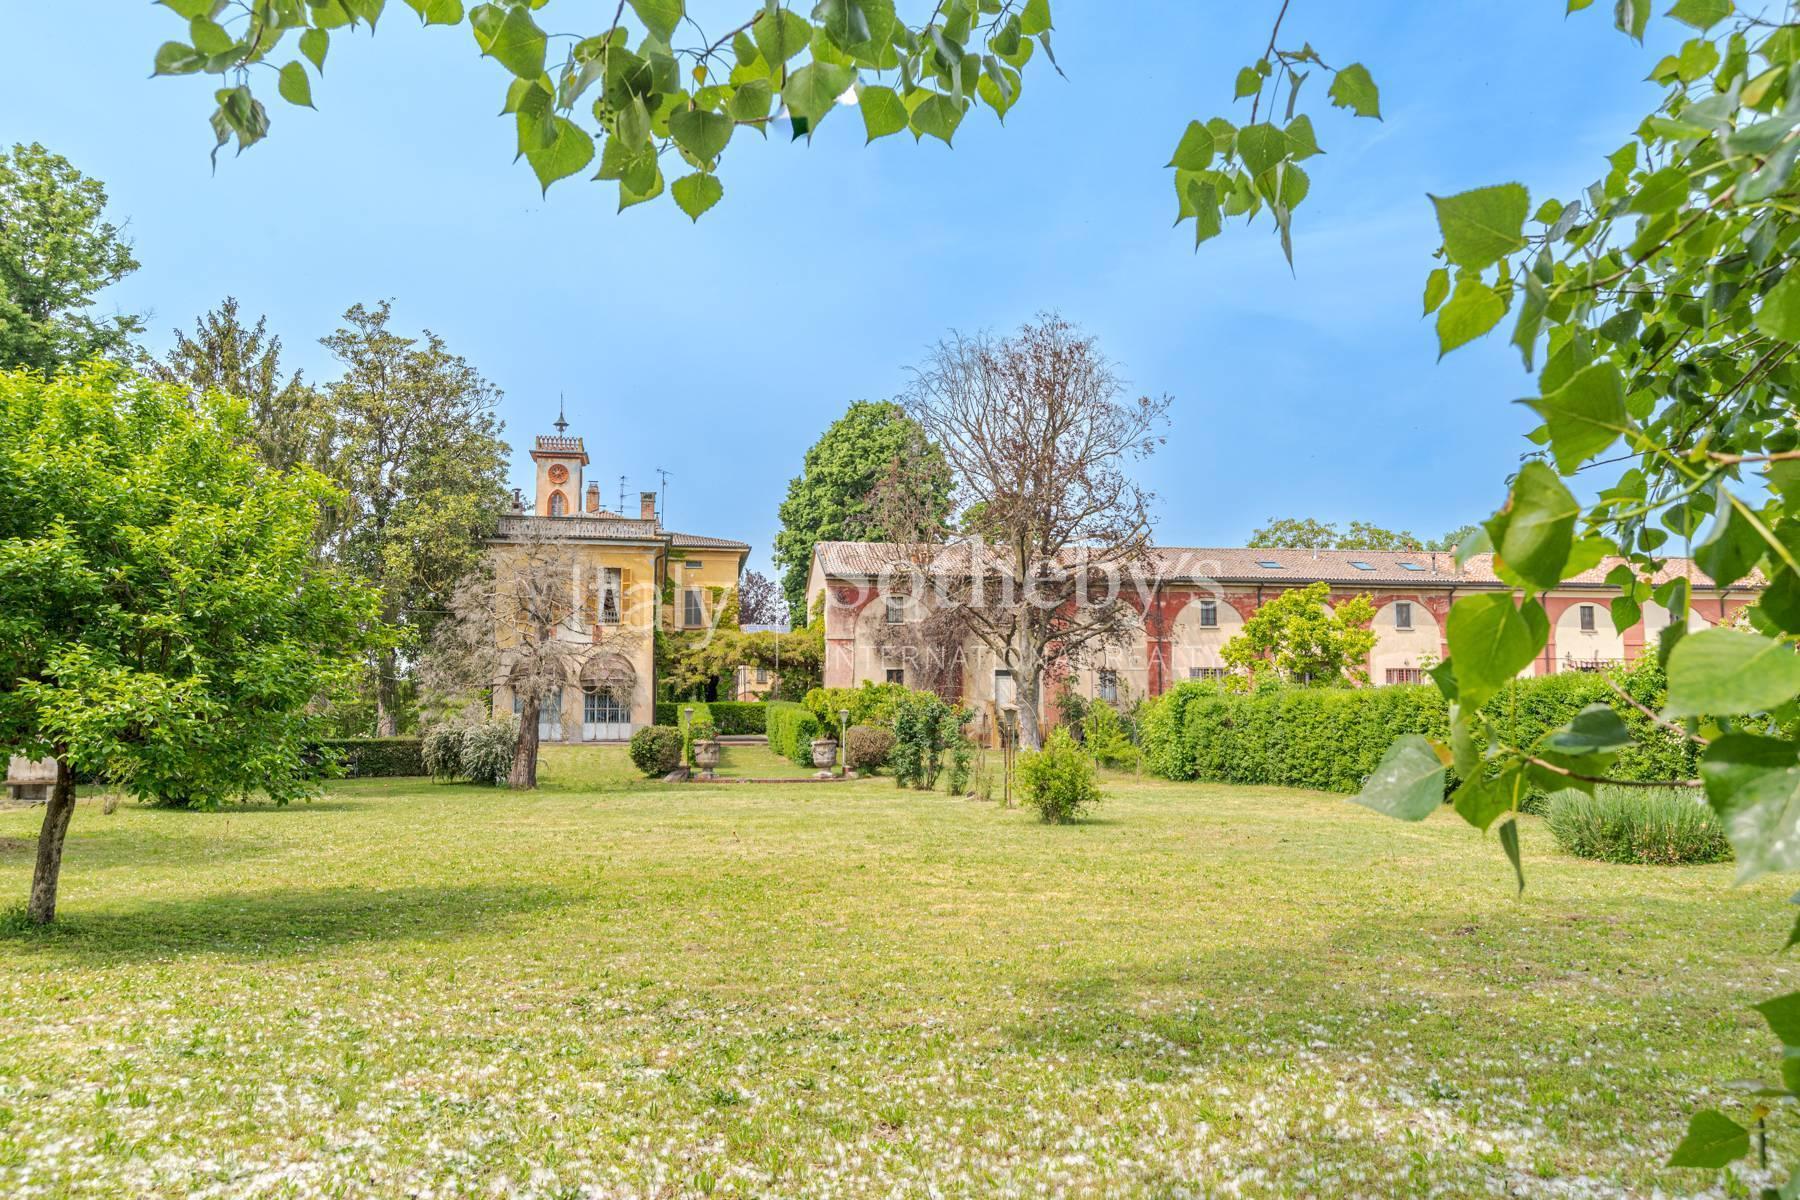 Cascina Bella - 18th century villa with park in Oltrepo' Pavese - 16